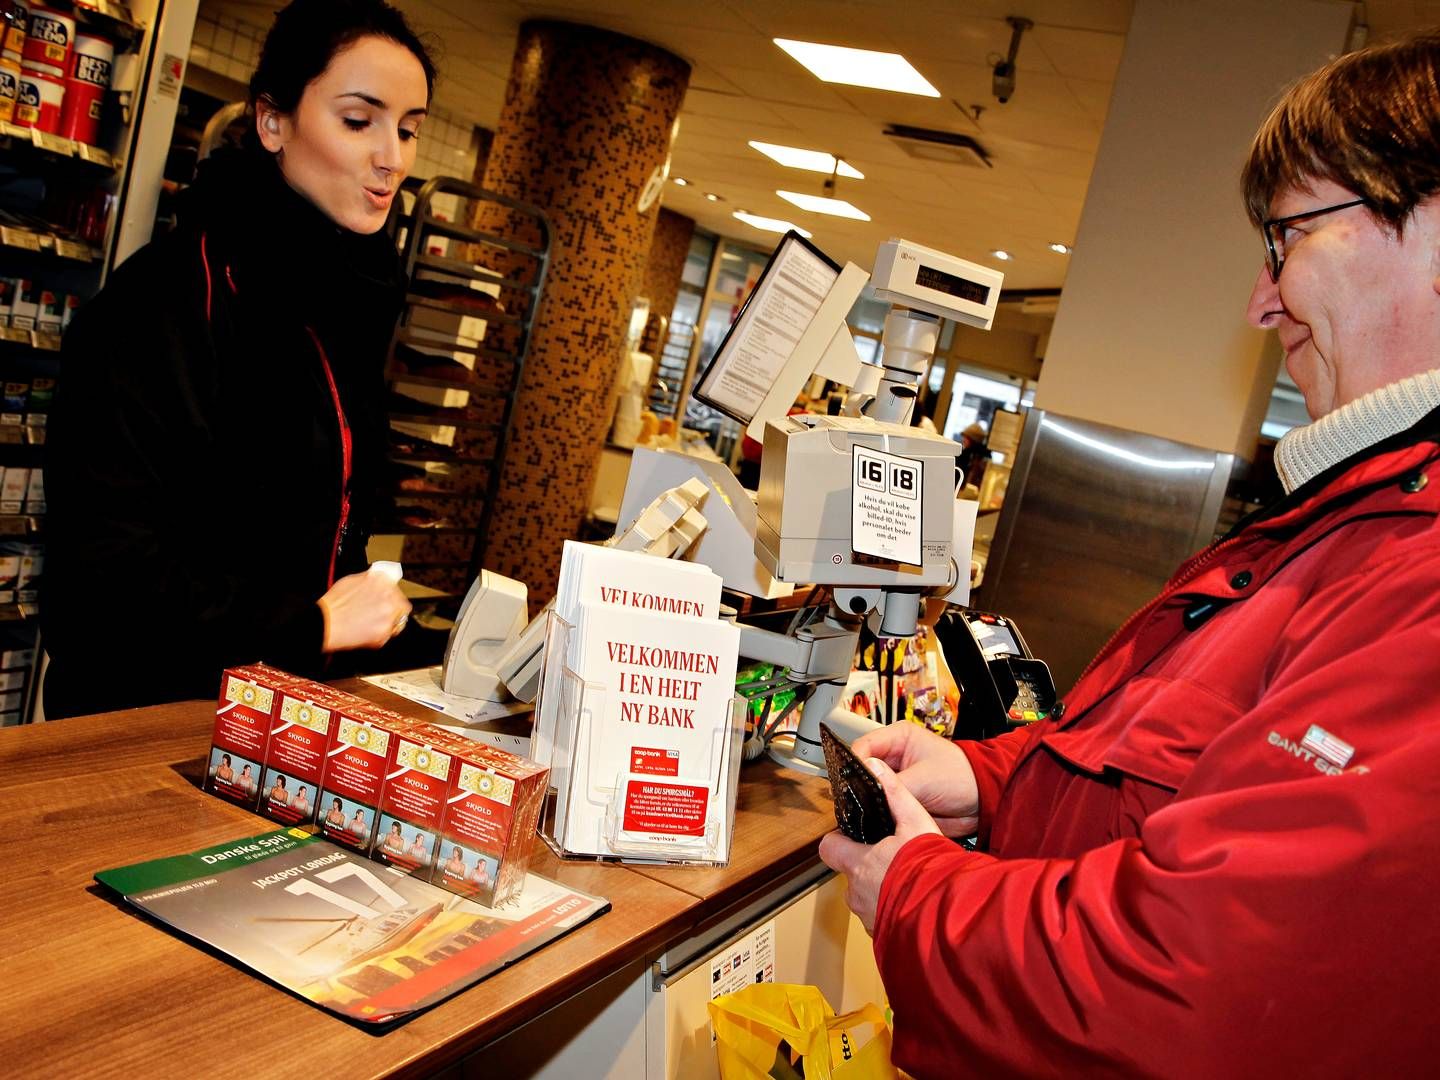 Postnord har droppet aftaler med 200 butikker som pakkeudleveringssteder, og det kan give færre under i de små dagligvarebutikker, mener DSK og Coop. | Foto: Martin Lehmann